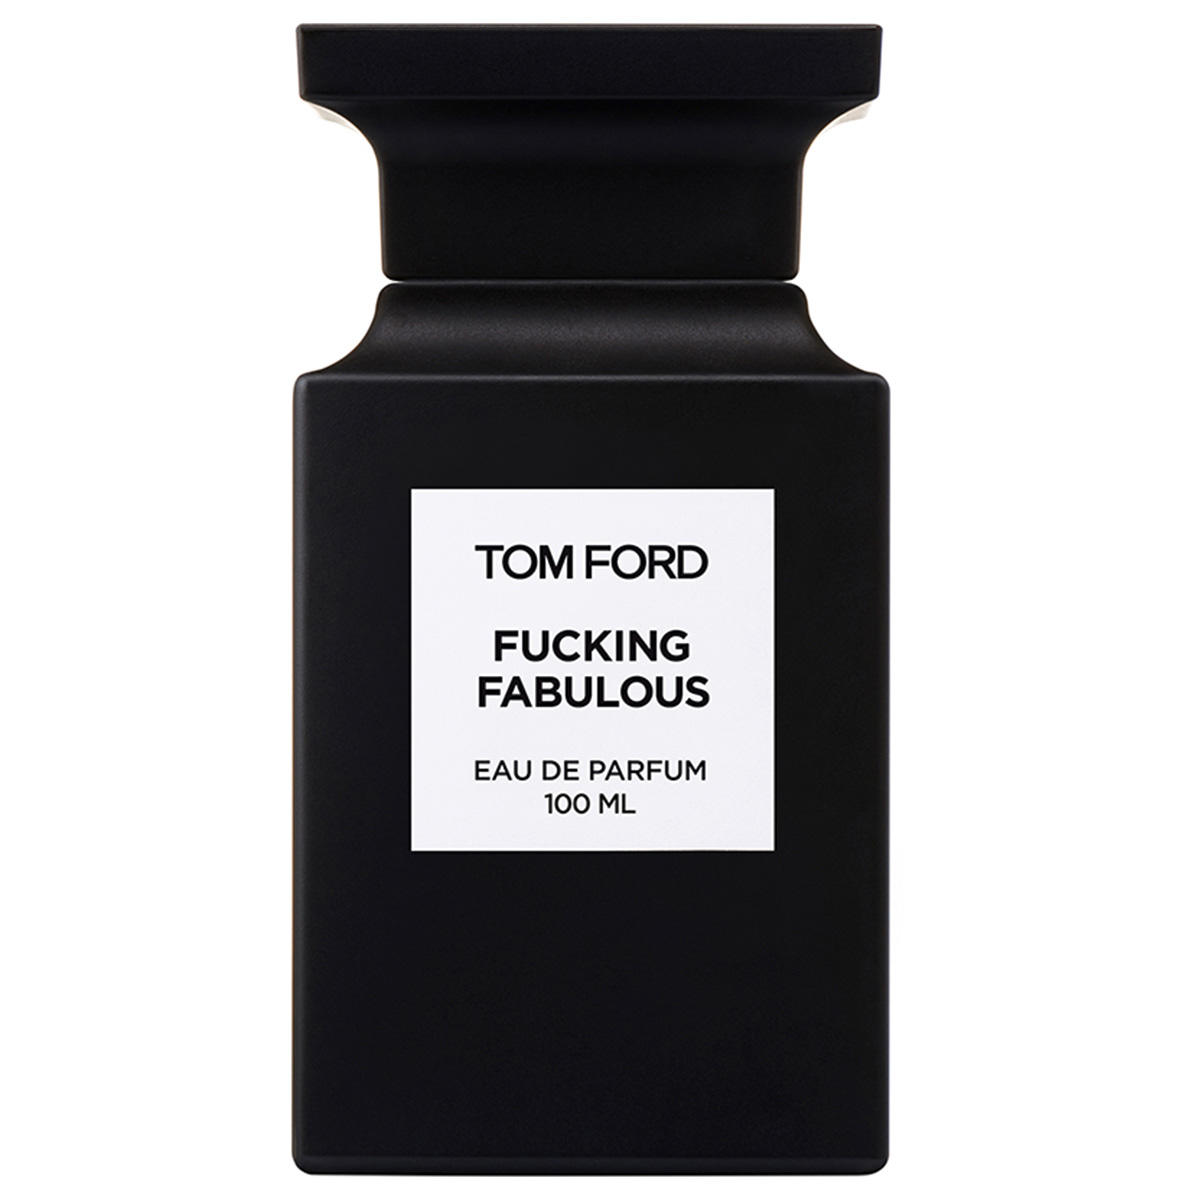 Tom Ford Fucking Fabulous Eau de Parfum  - 1